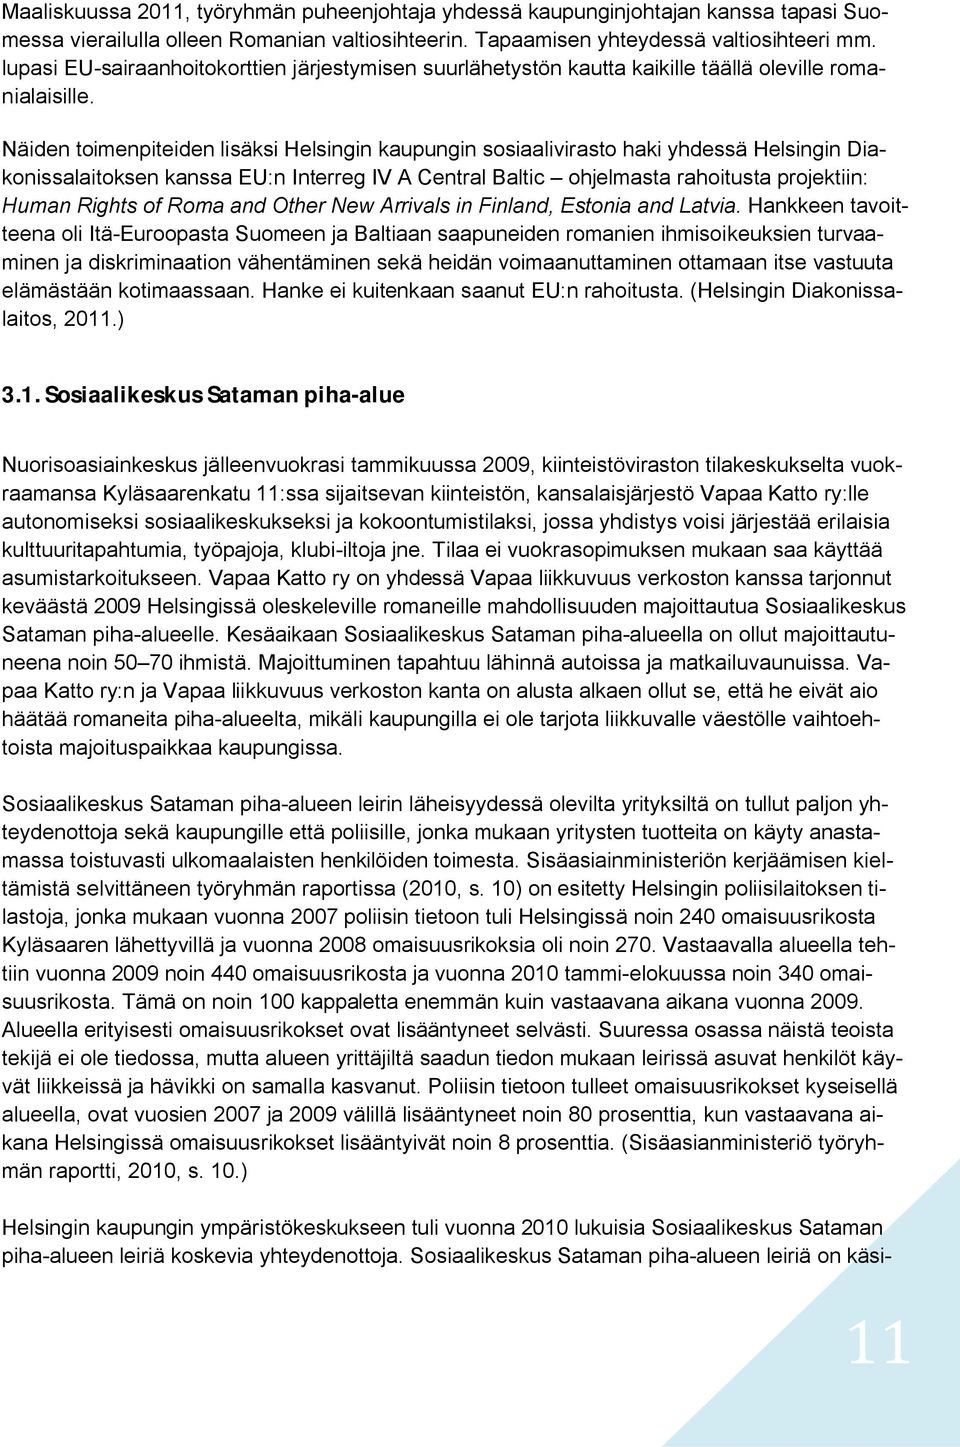 Näiden toimenpiteiden lisäksi Helsingin kaupungin sosiaalivirasto haki yhdessä Helsingin Diakonissalaitoksen kanssa EU:n Interreg IV A Central Baltic ohjelmasta rahoitusta projektiin: Human Rights of